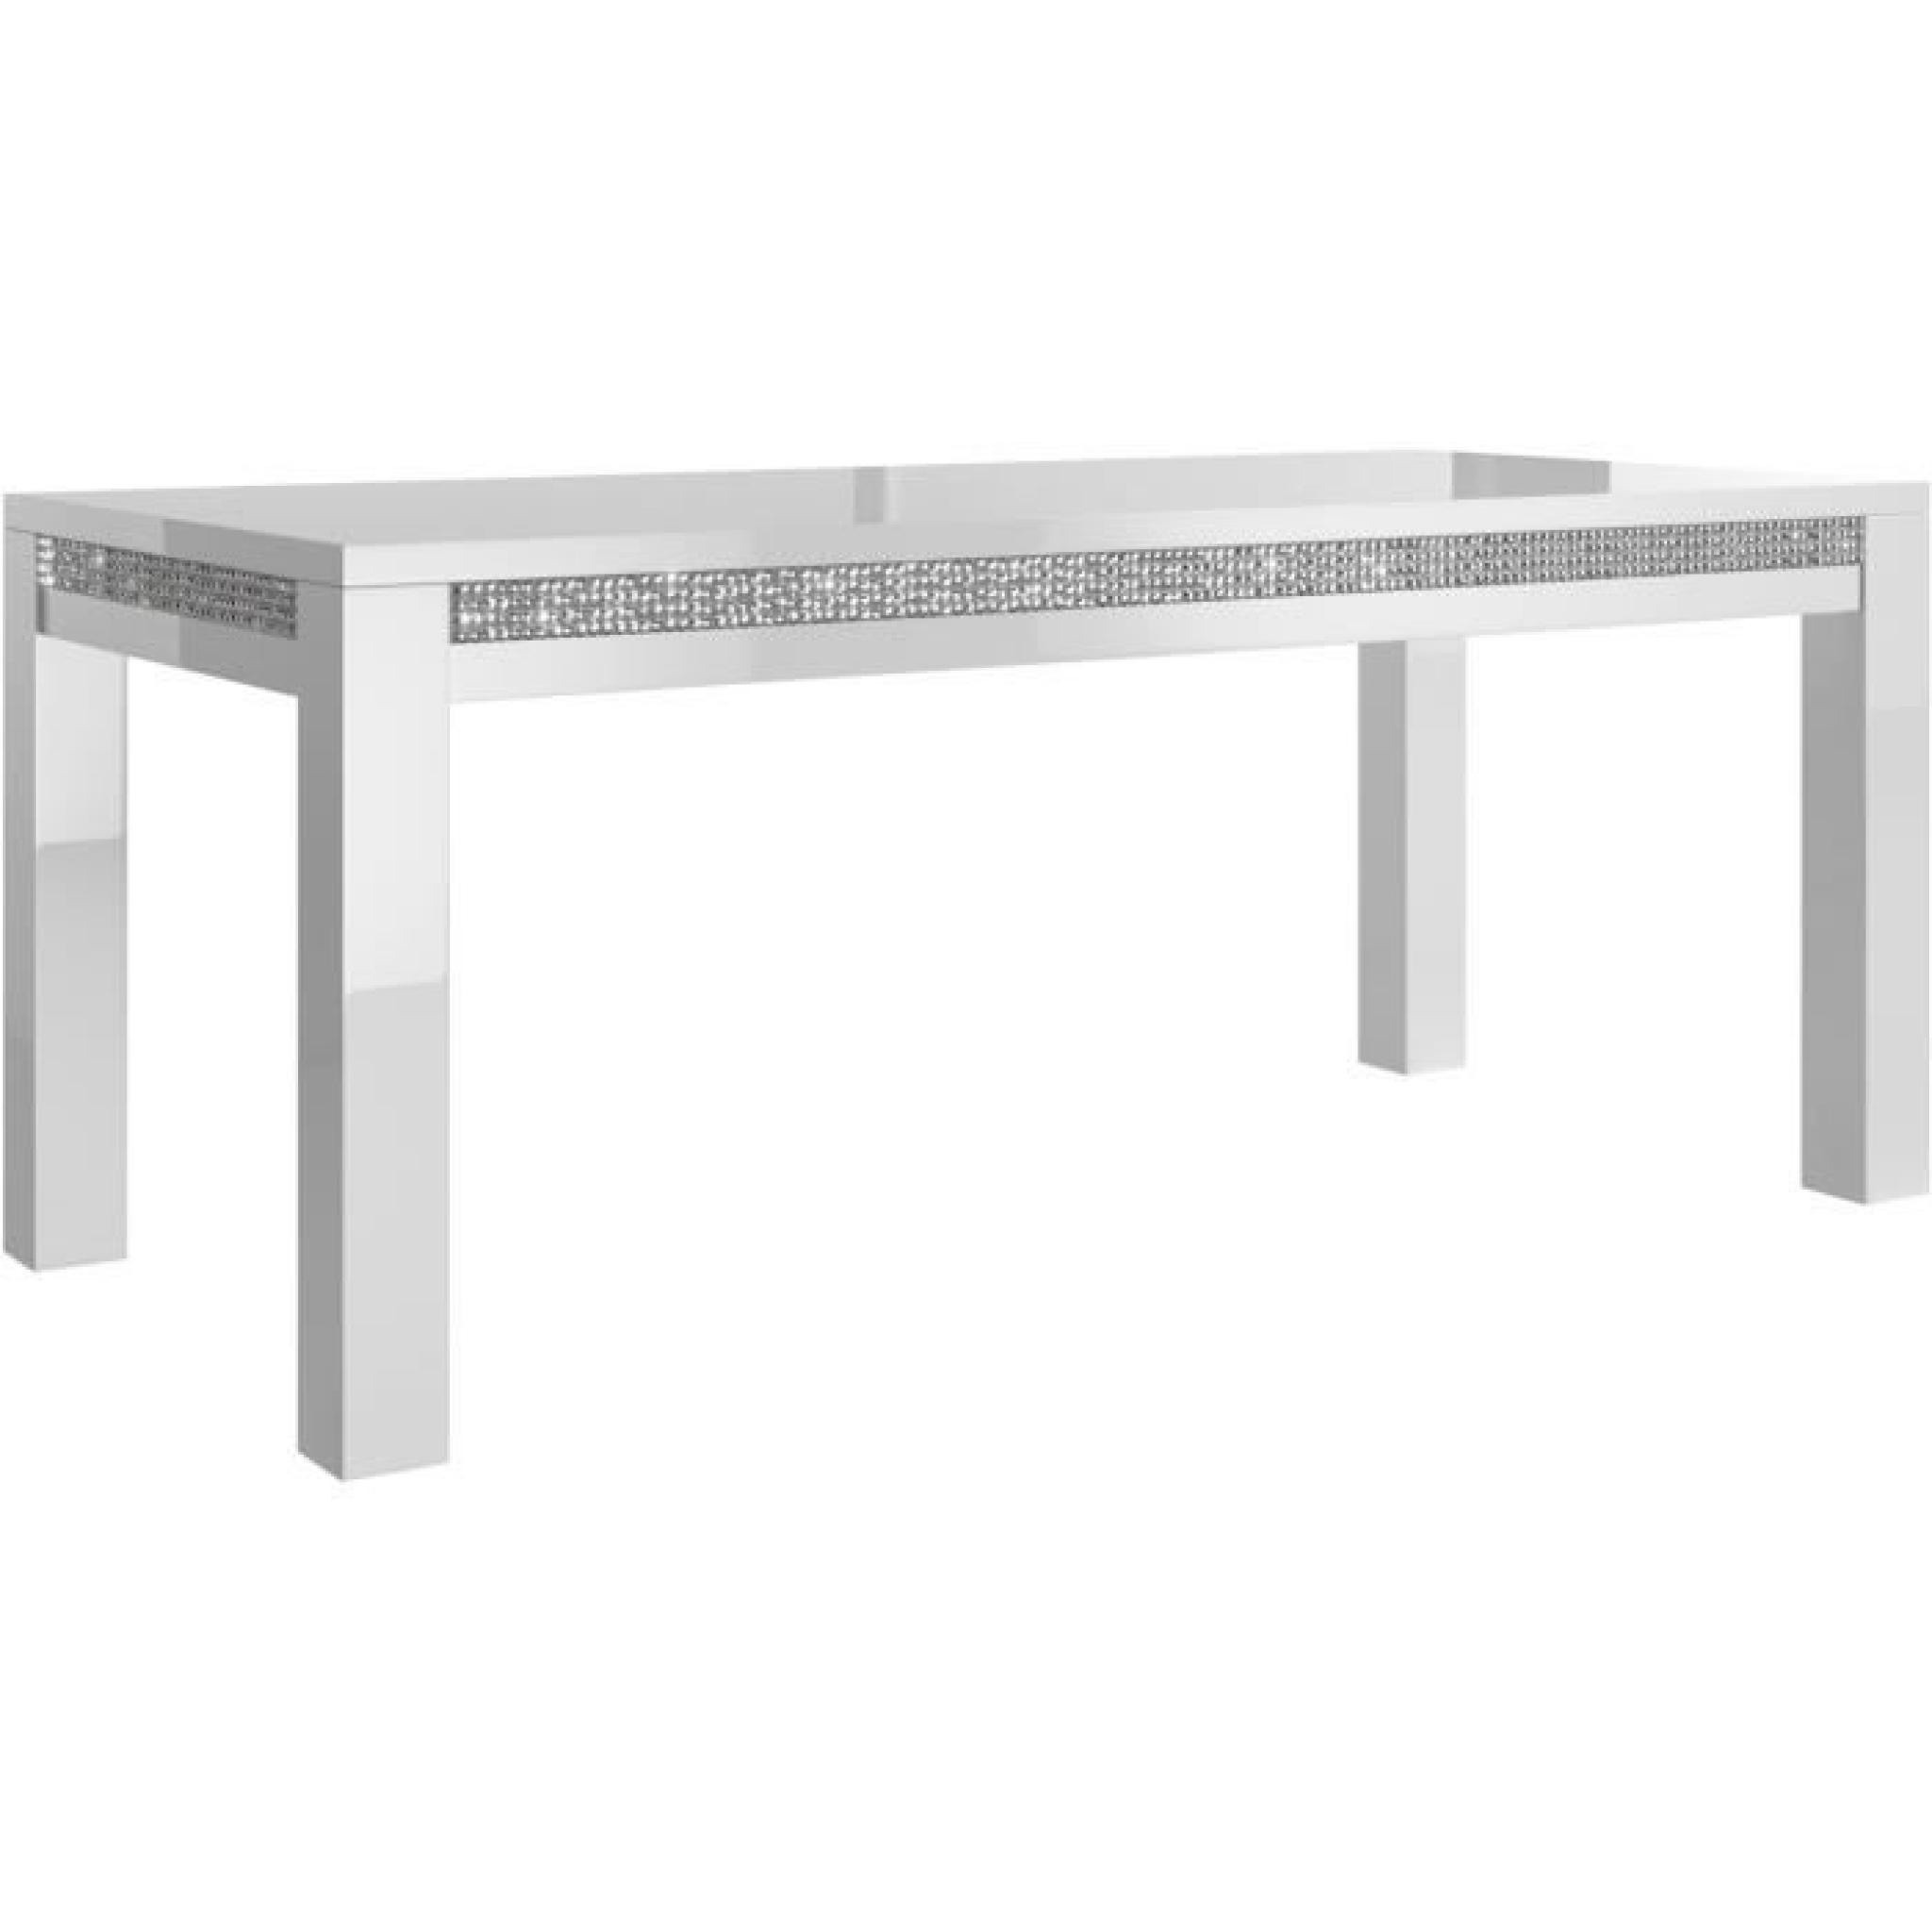 Table à manger 160 cm blanc + 4 chaises ultra design blanc pas cher